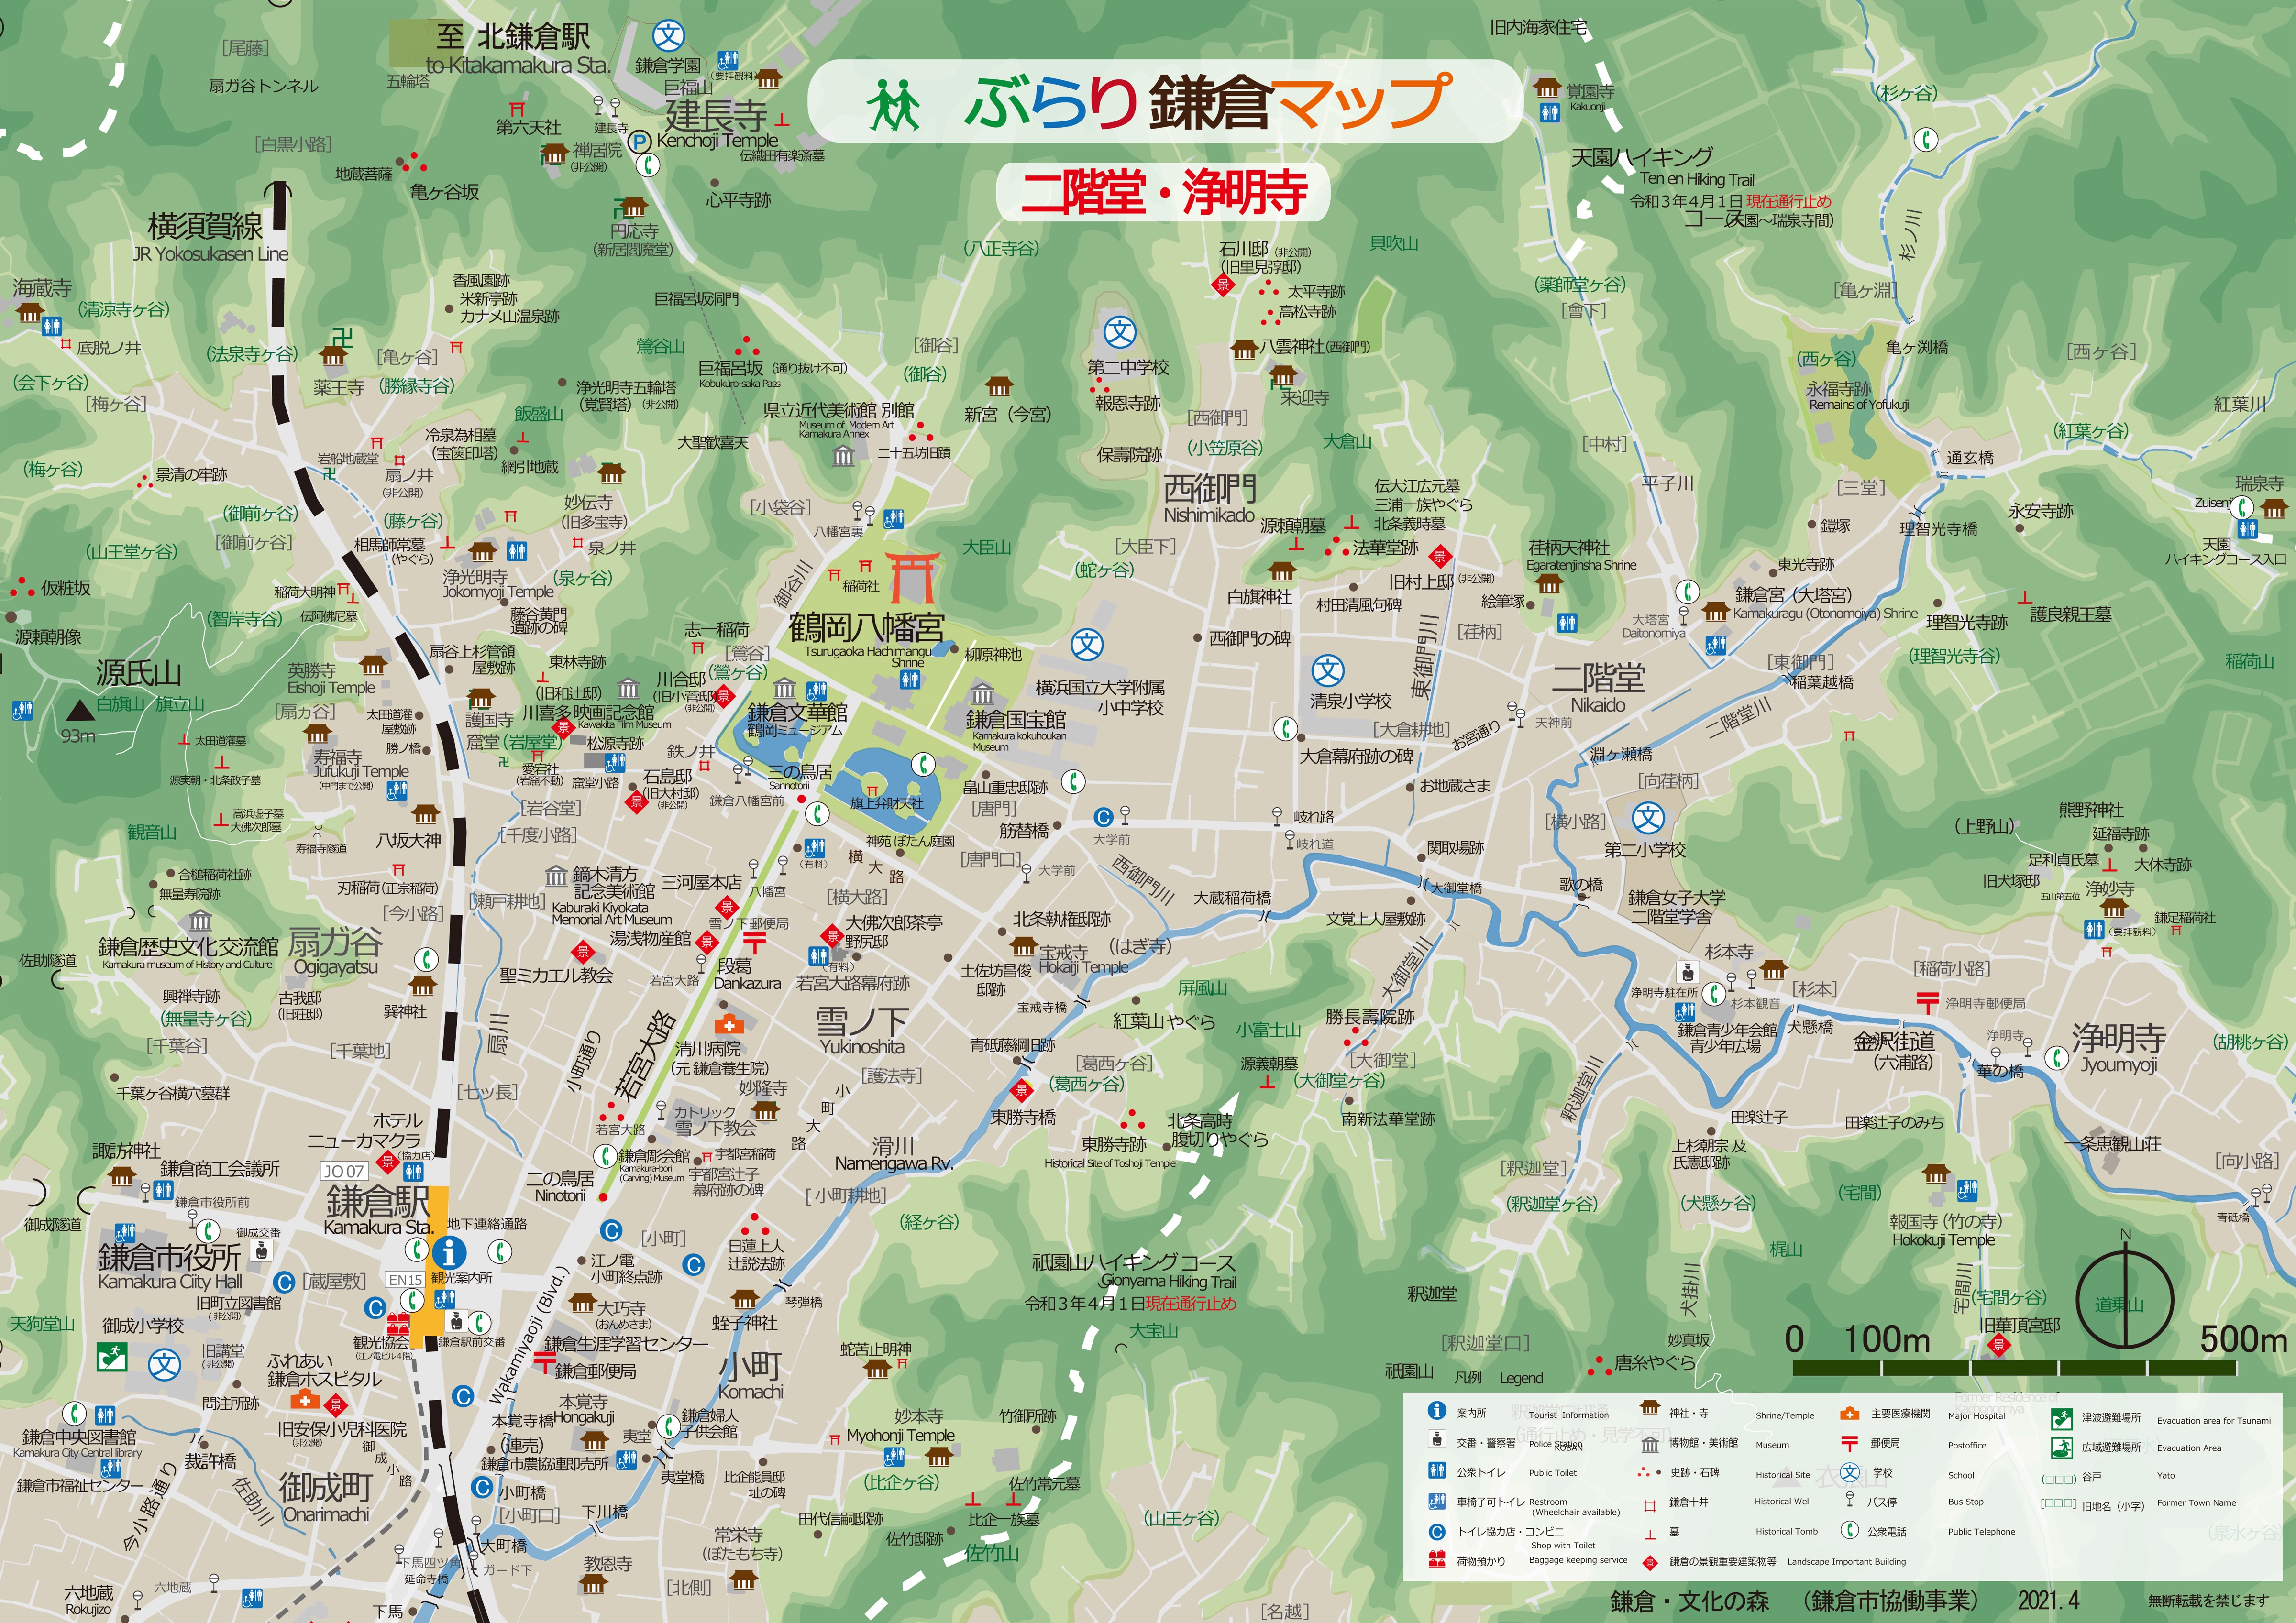 鎌倉観光のおともに 観光パンフレット 資料をどうぞ 鎌倉市観光